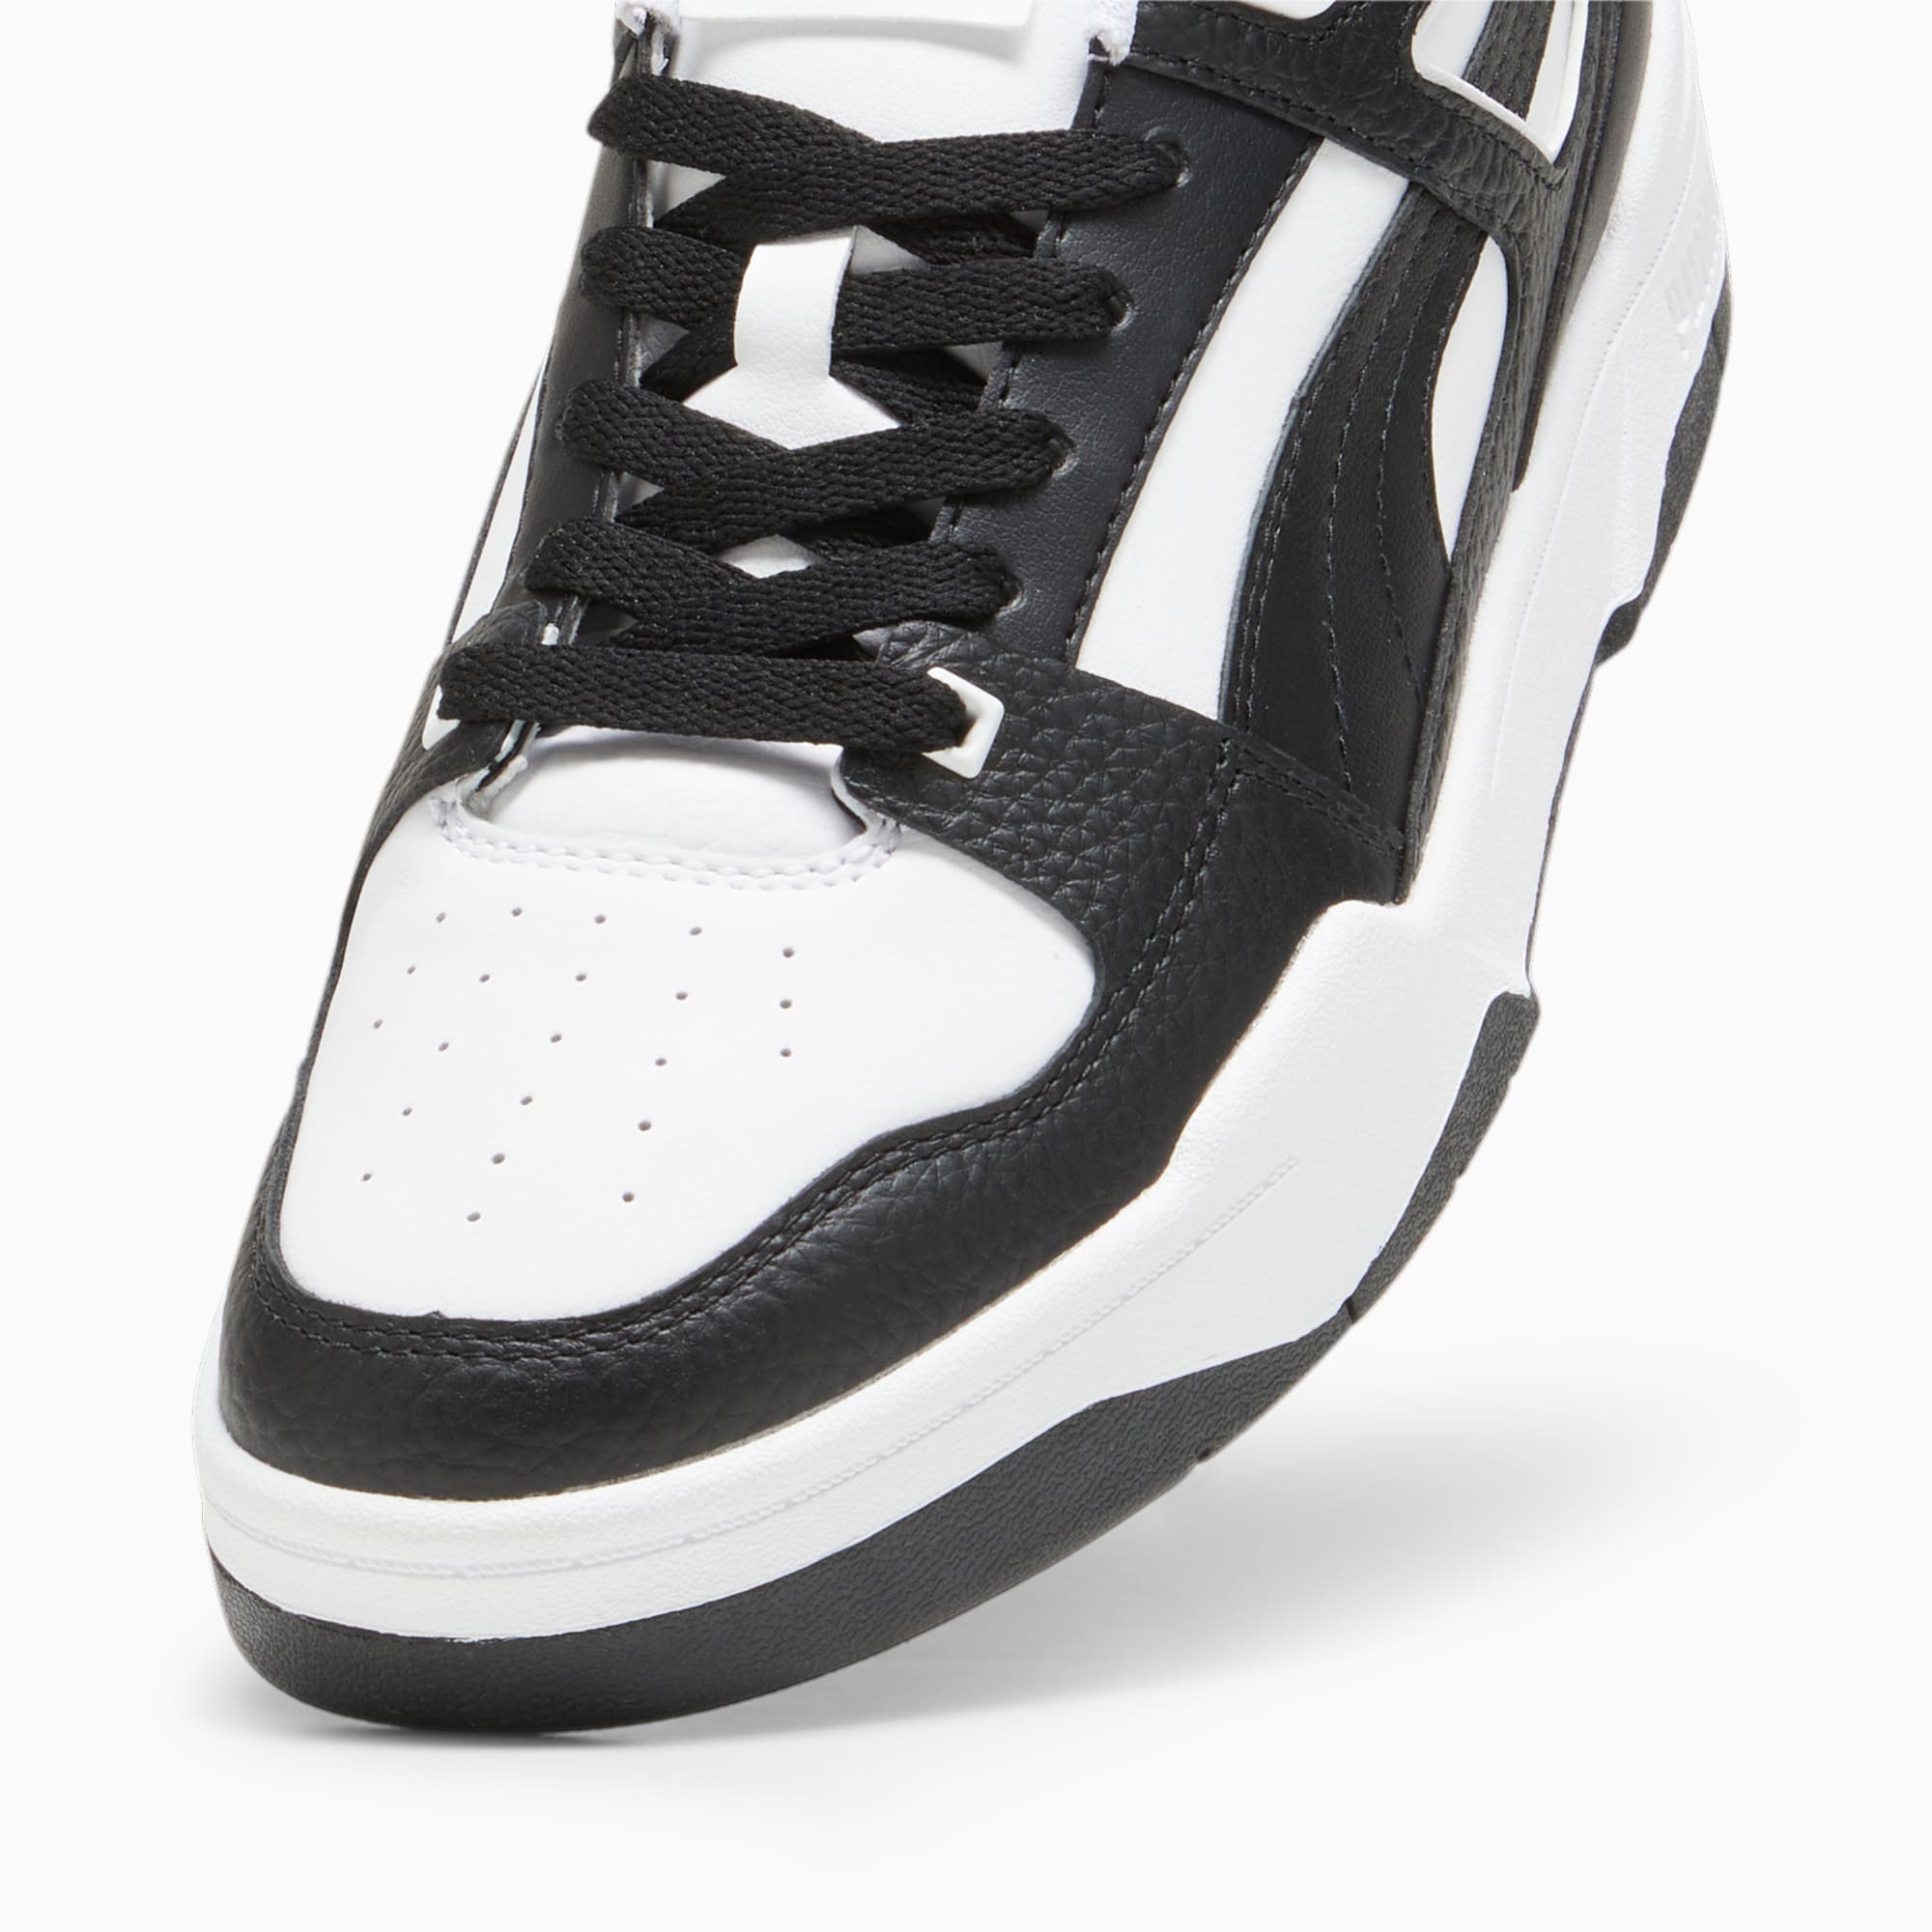 PUMA Slipstream Leren Sneakers Voor Dames, Wit/Zwart